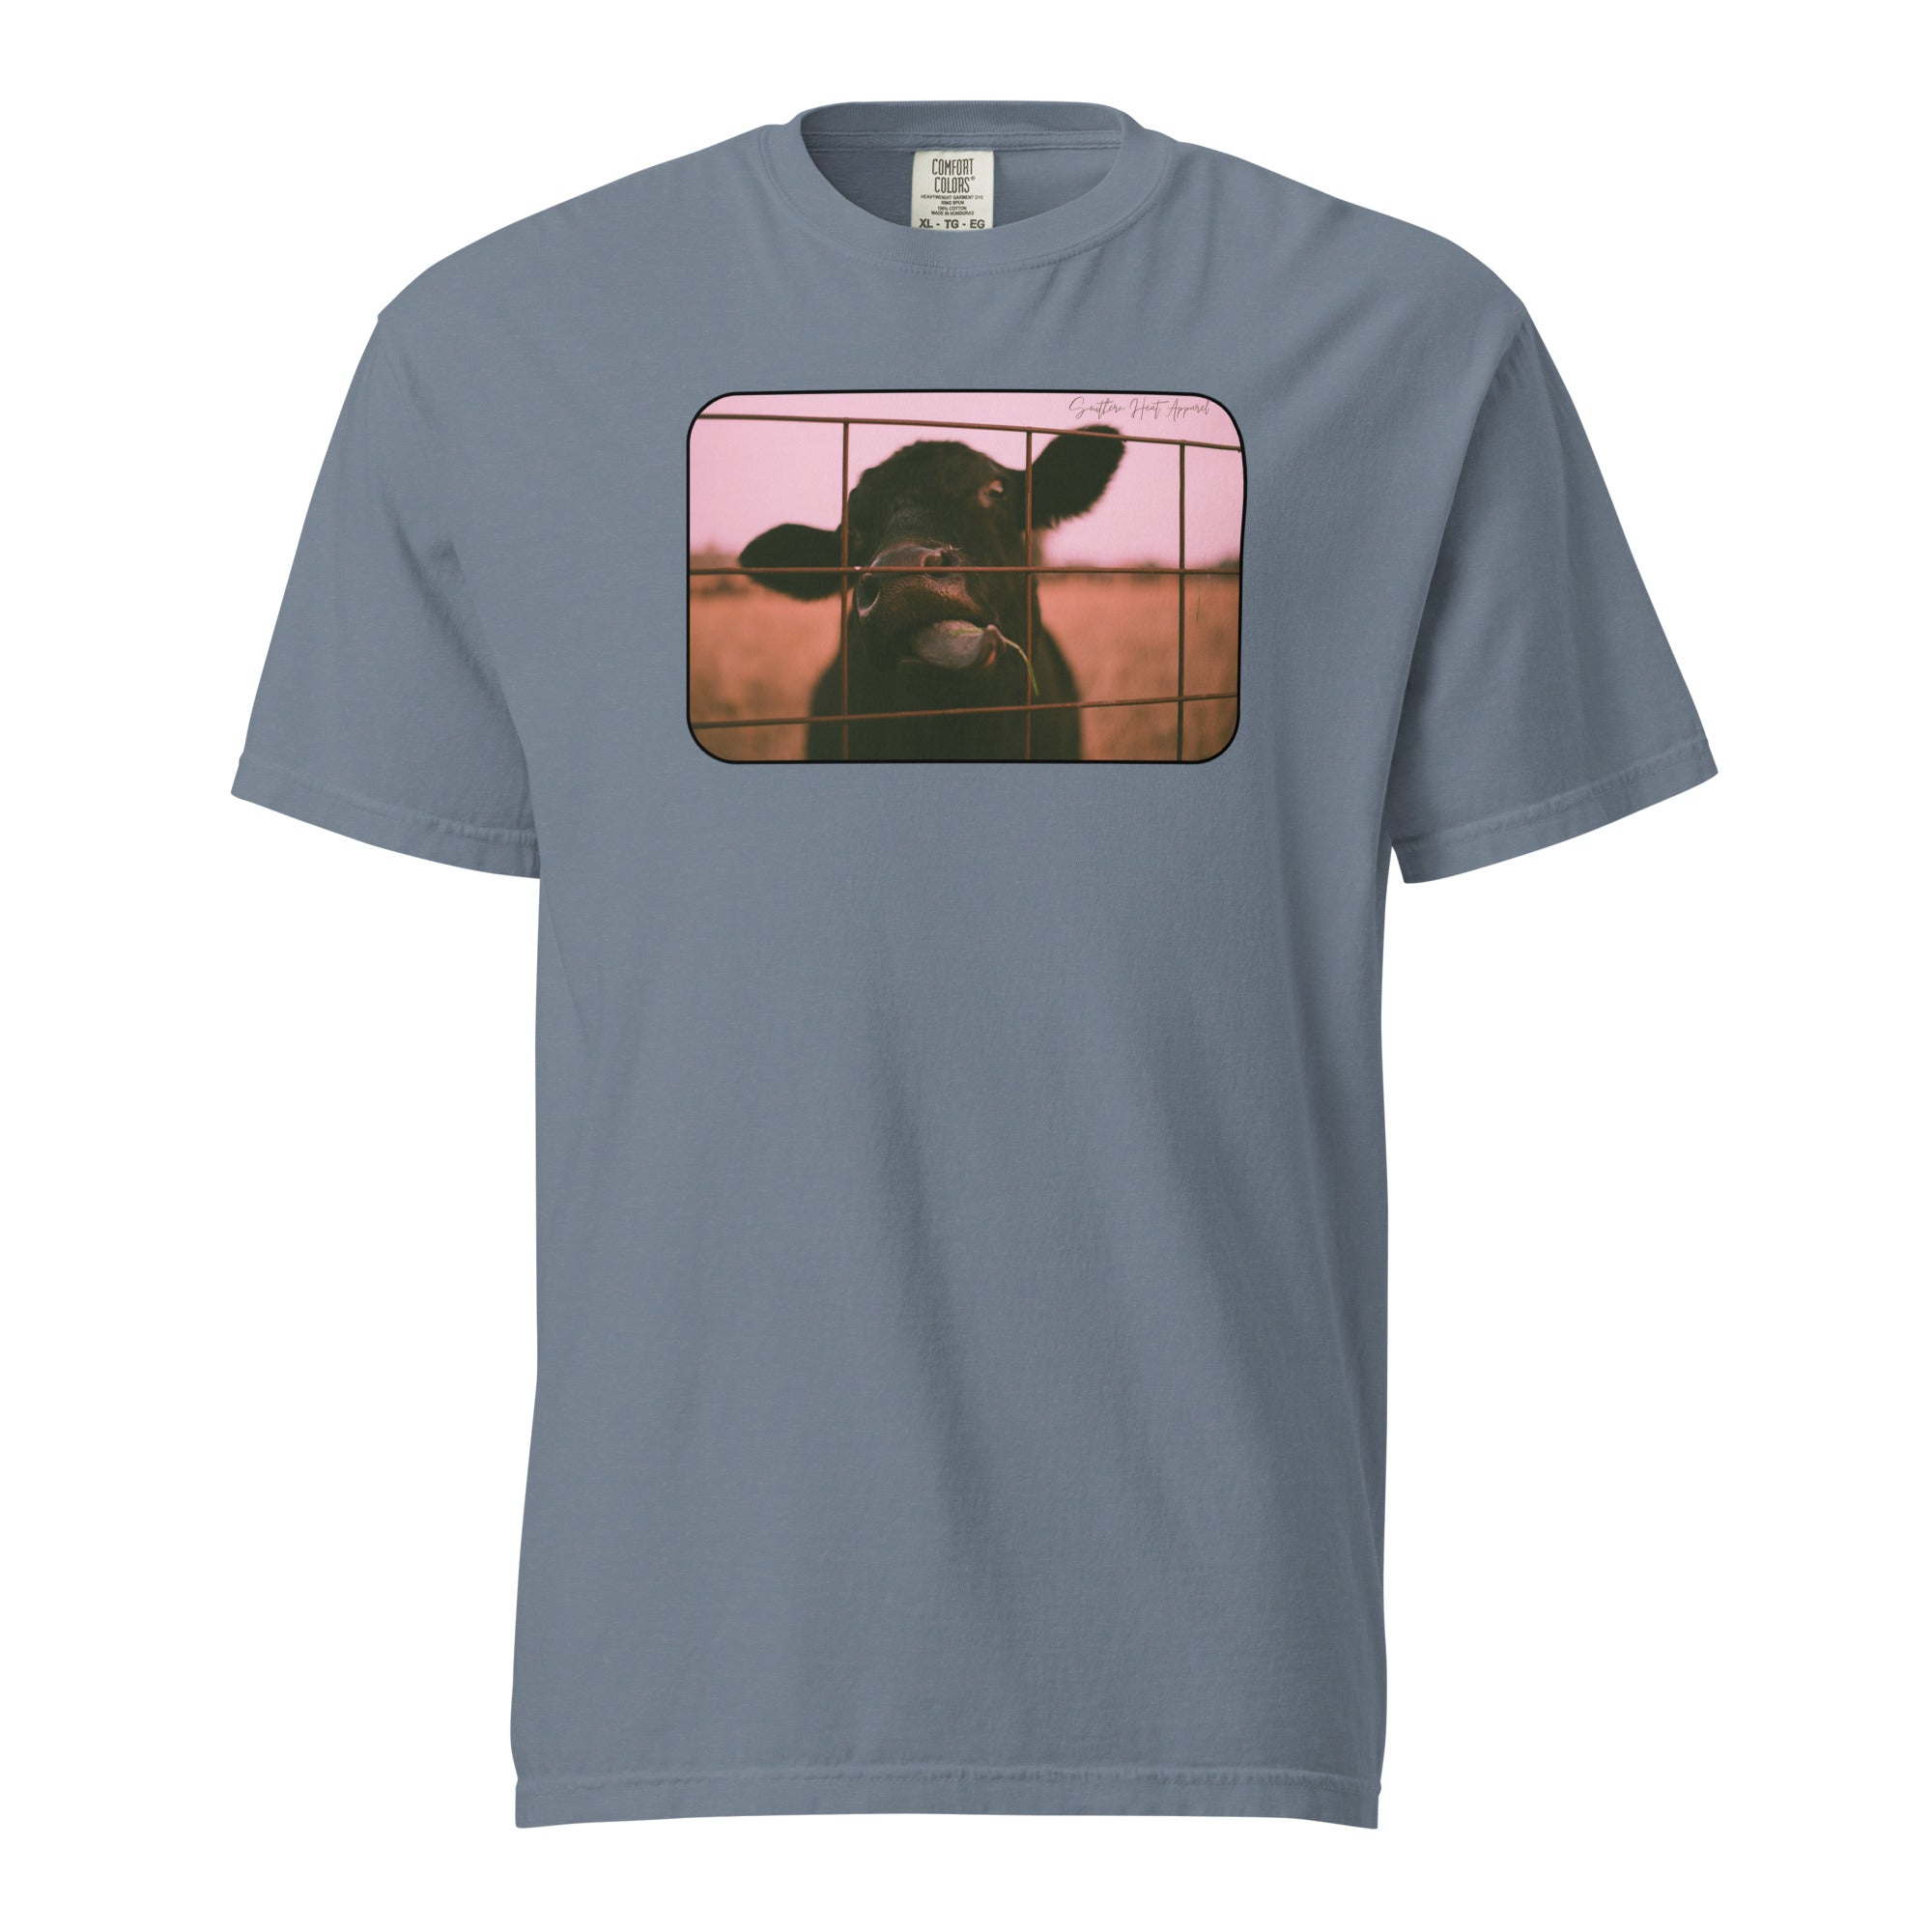 Cow's gotta eat- Mens garment-dyed heavyweight t-shirt